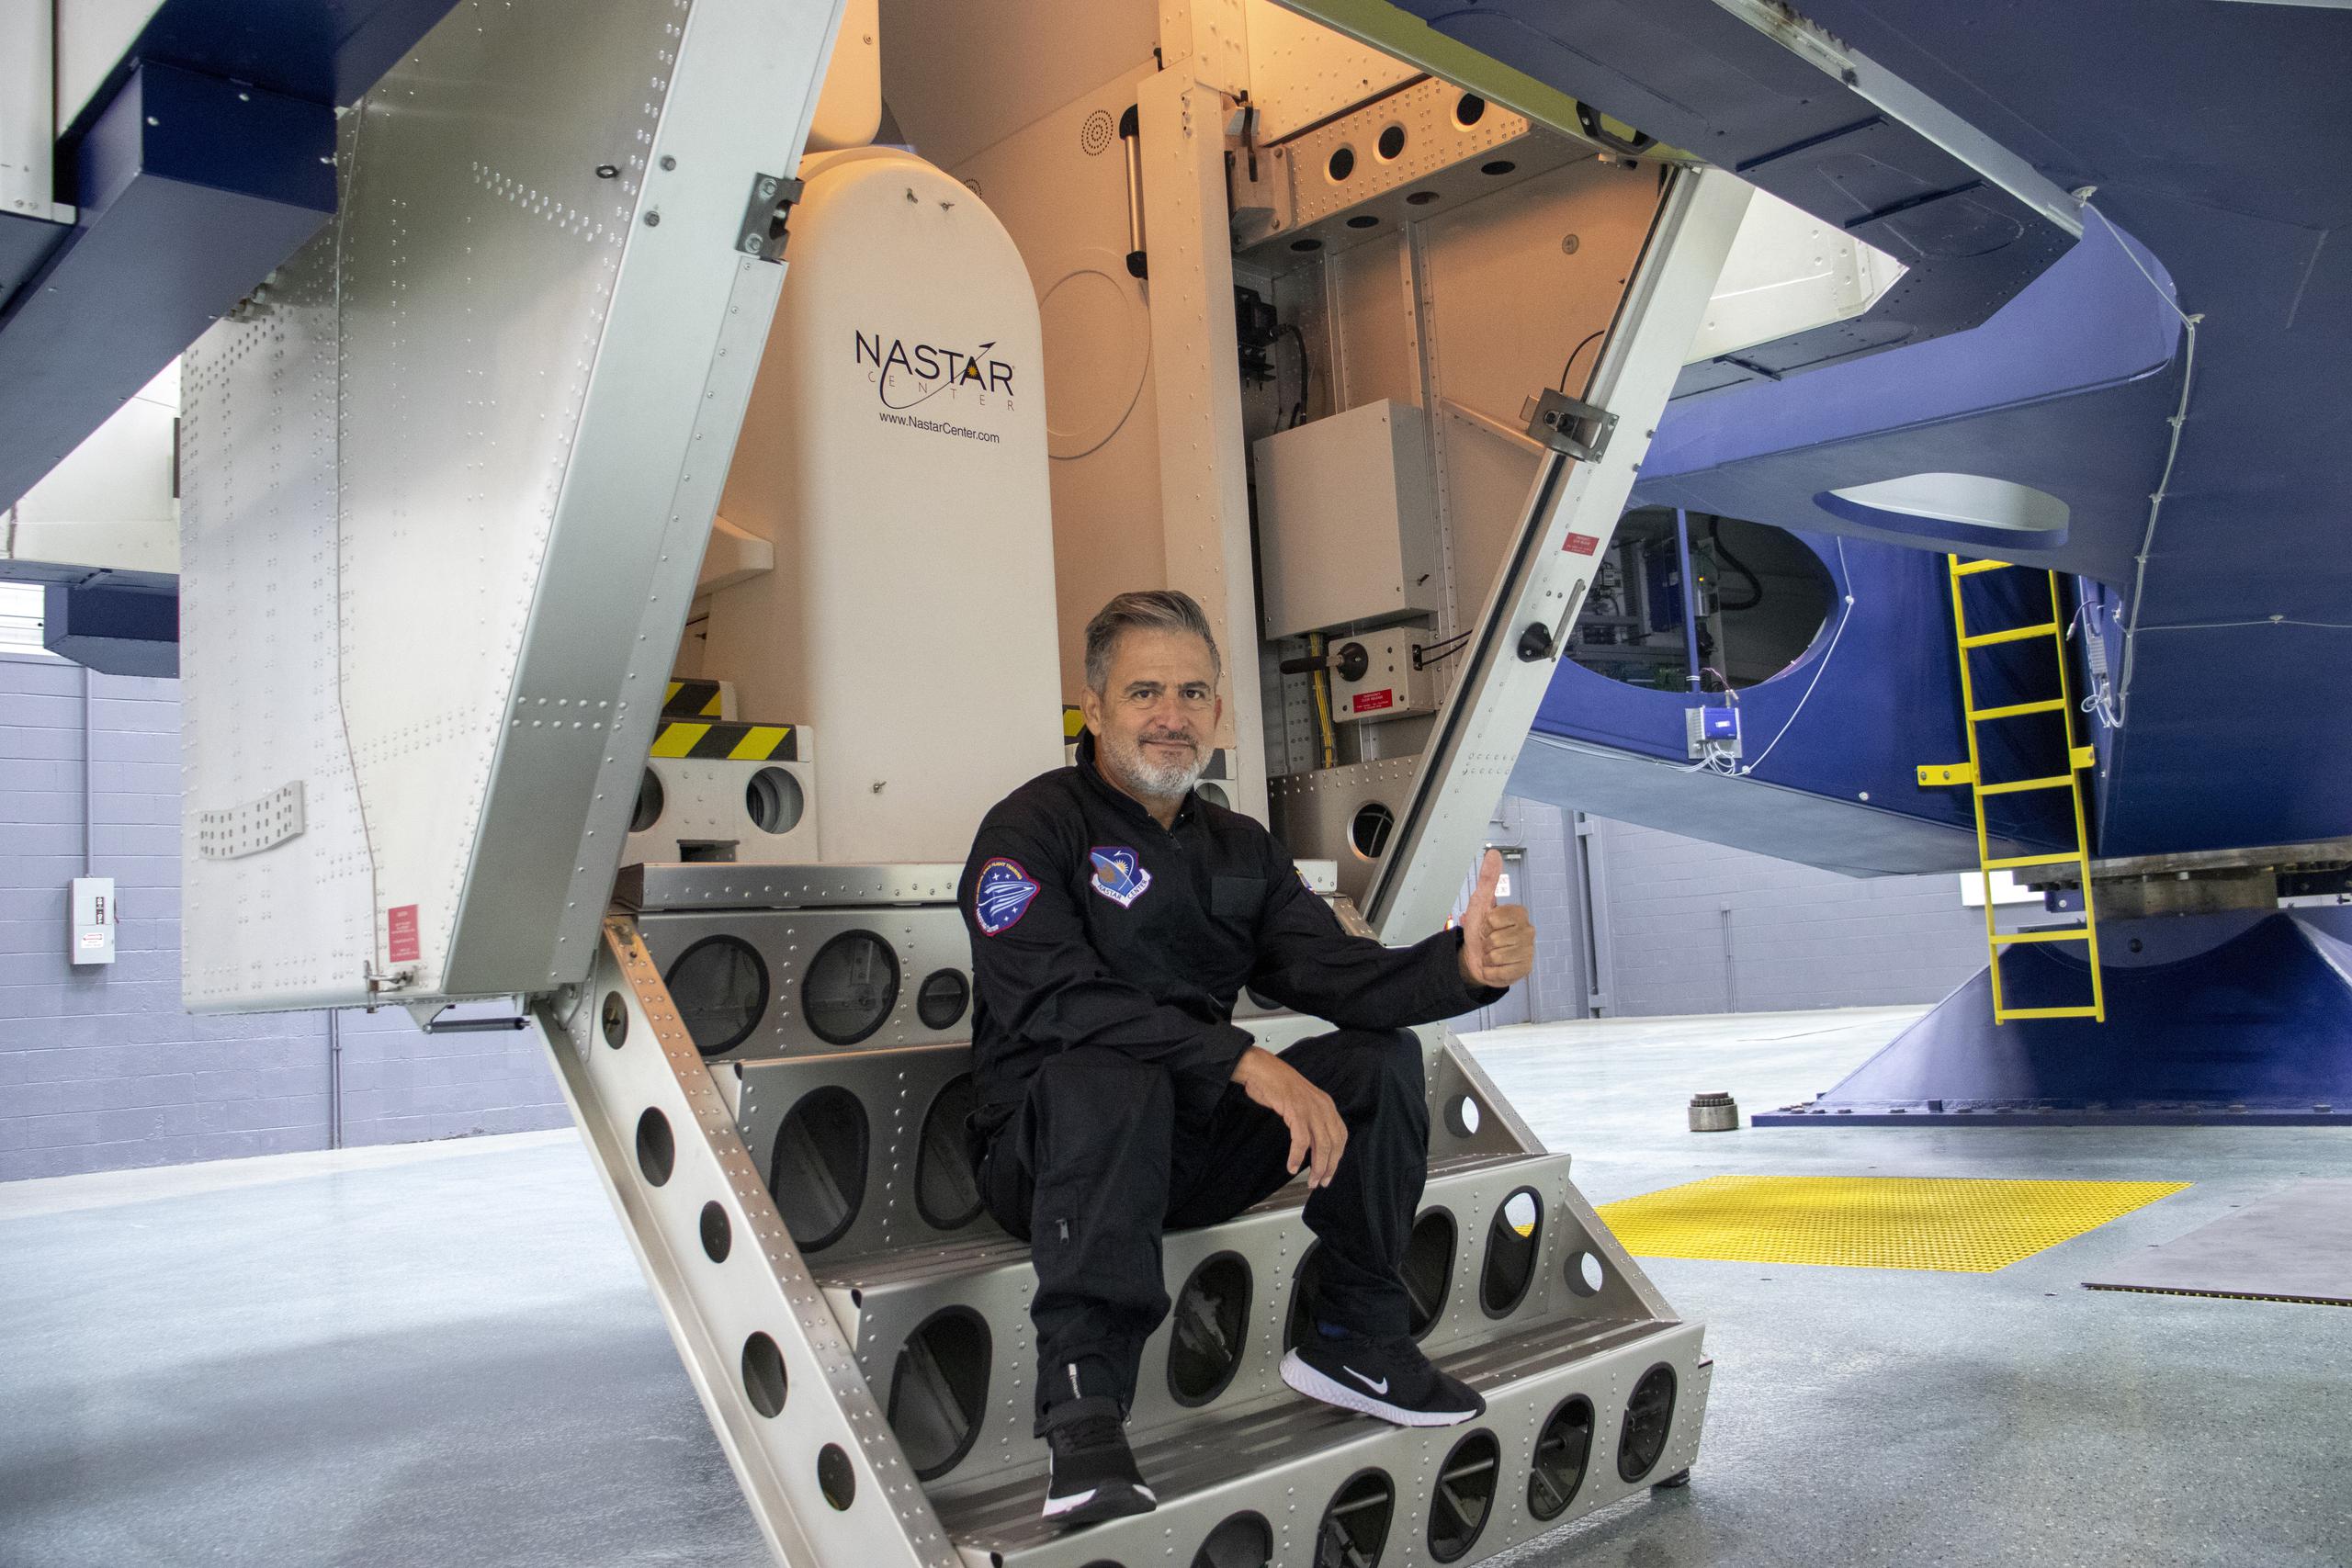 En la imagen proporcionada por la Fundación Jean Maggi, se observa a Jean Maggi, un argentino de 58 años que padece poliomielitis, posando en un simulador espacial en el National Aerospace Training and Research (NASTAR) Center en las afueras de Filadelfia, Pensilvania, el 9 de abril de 2021.